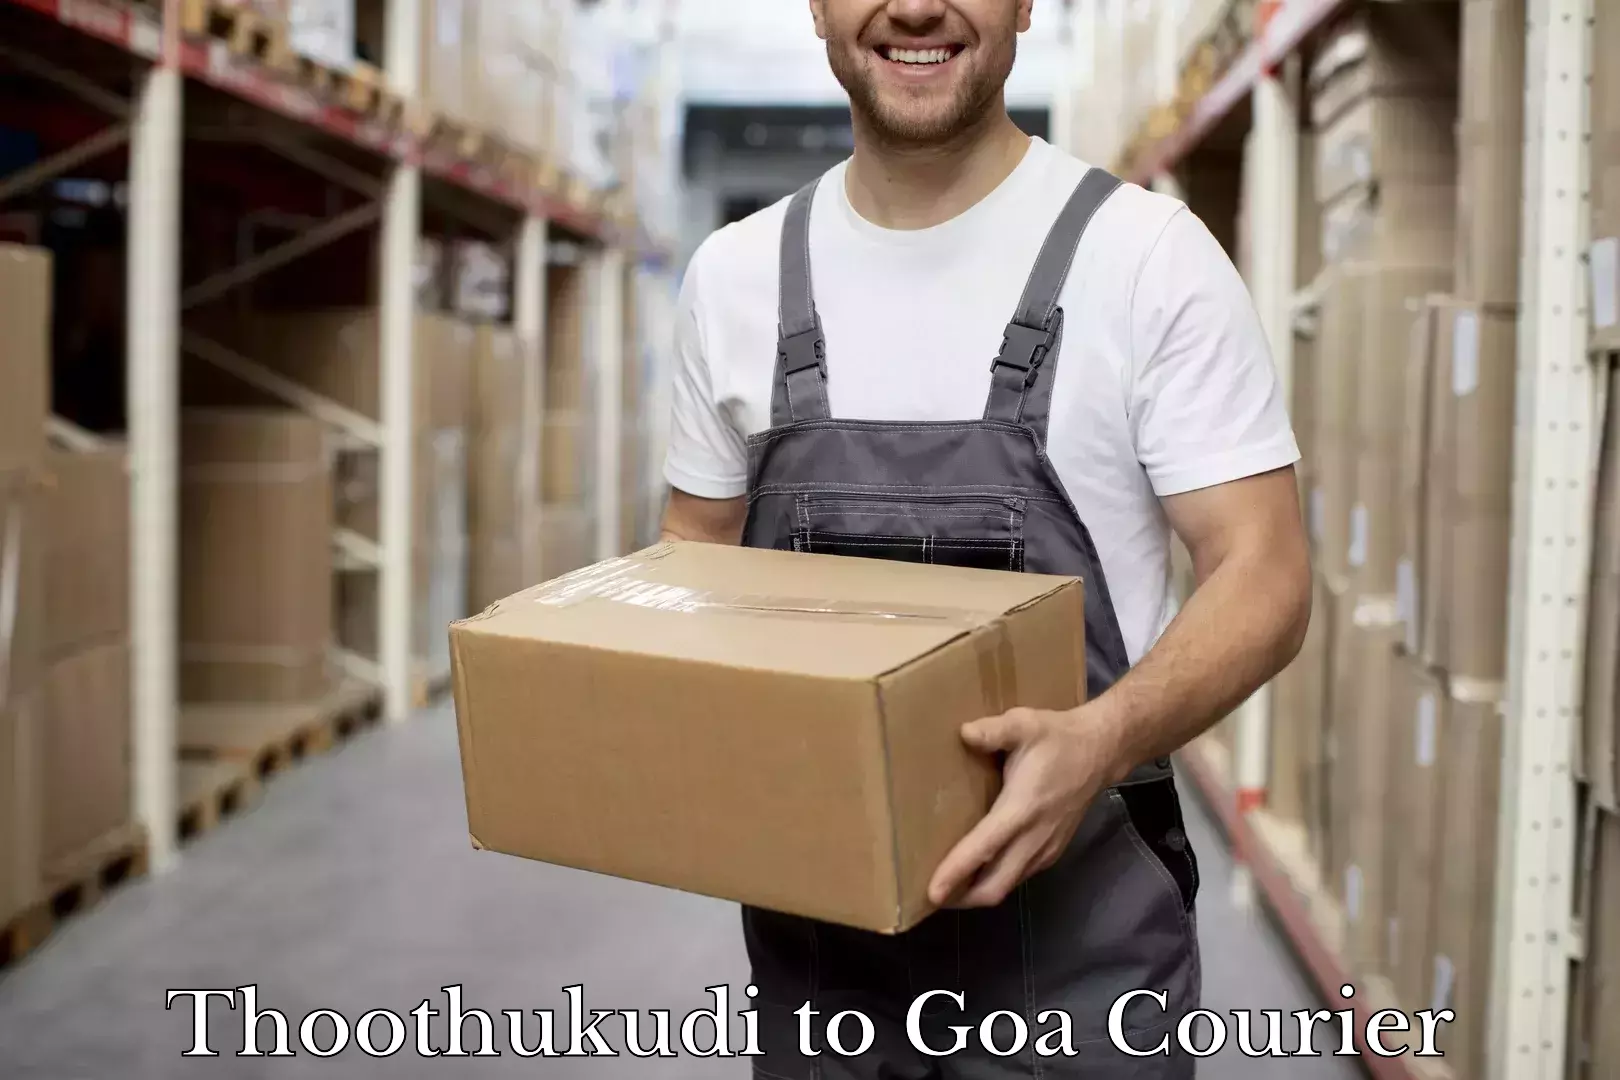 Luggage transport service Thoothukudi to Goa University